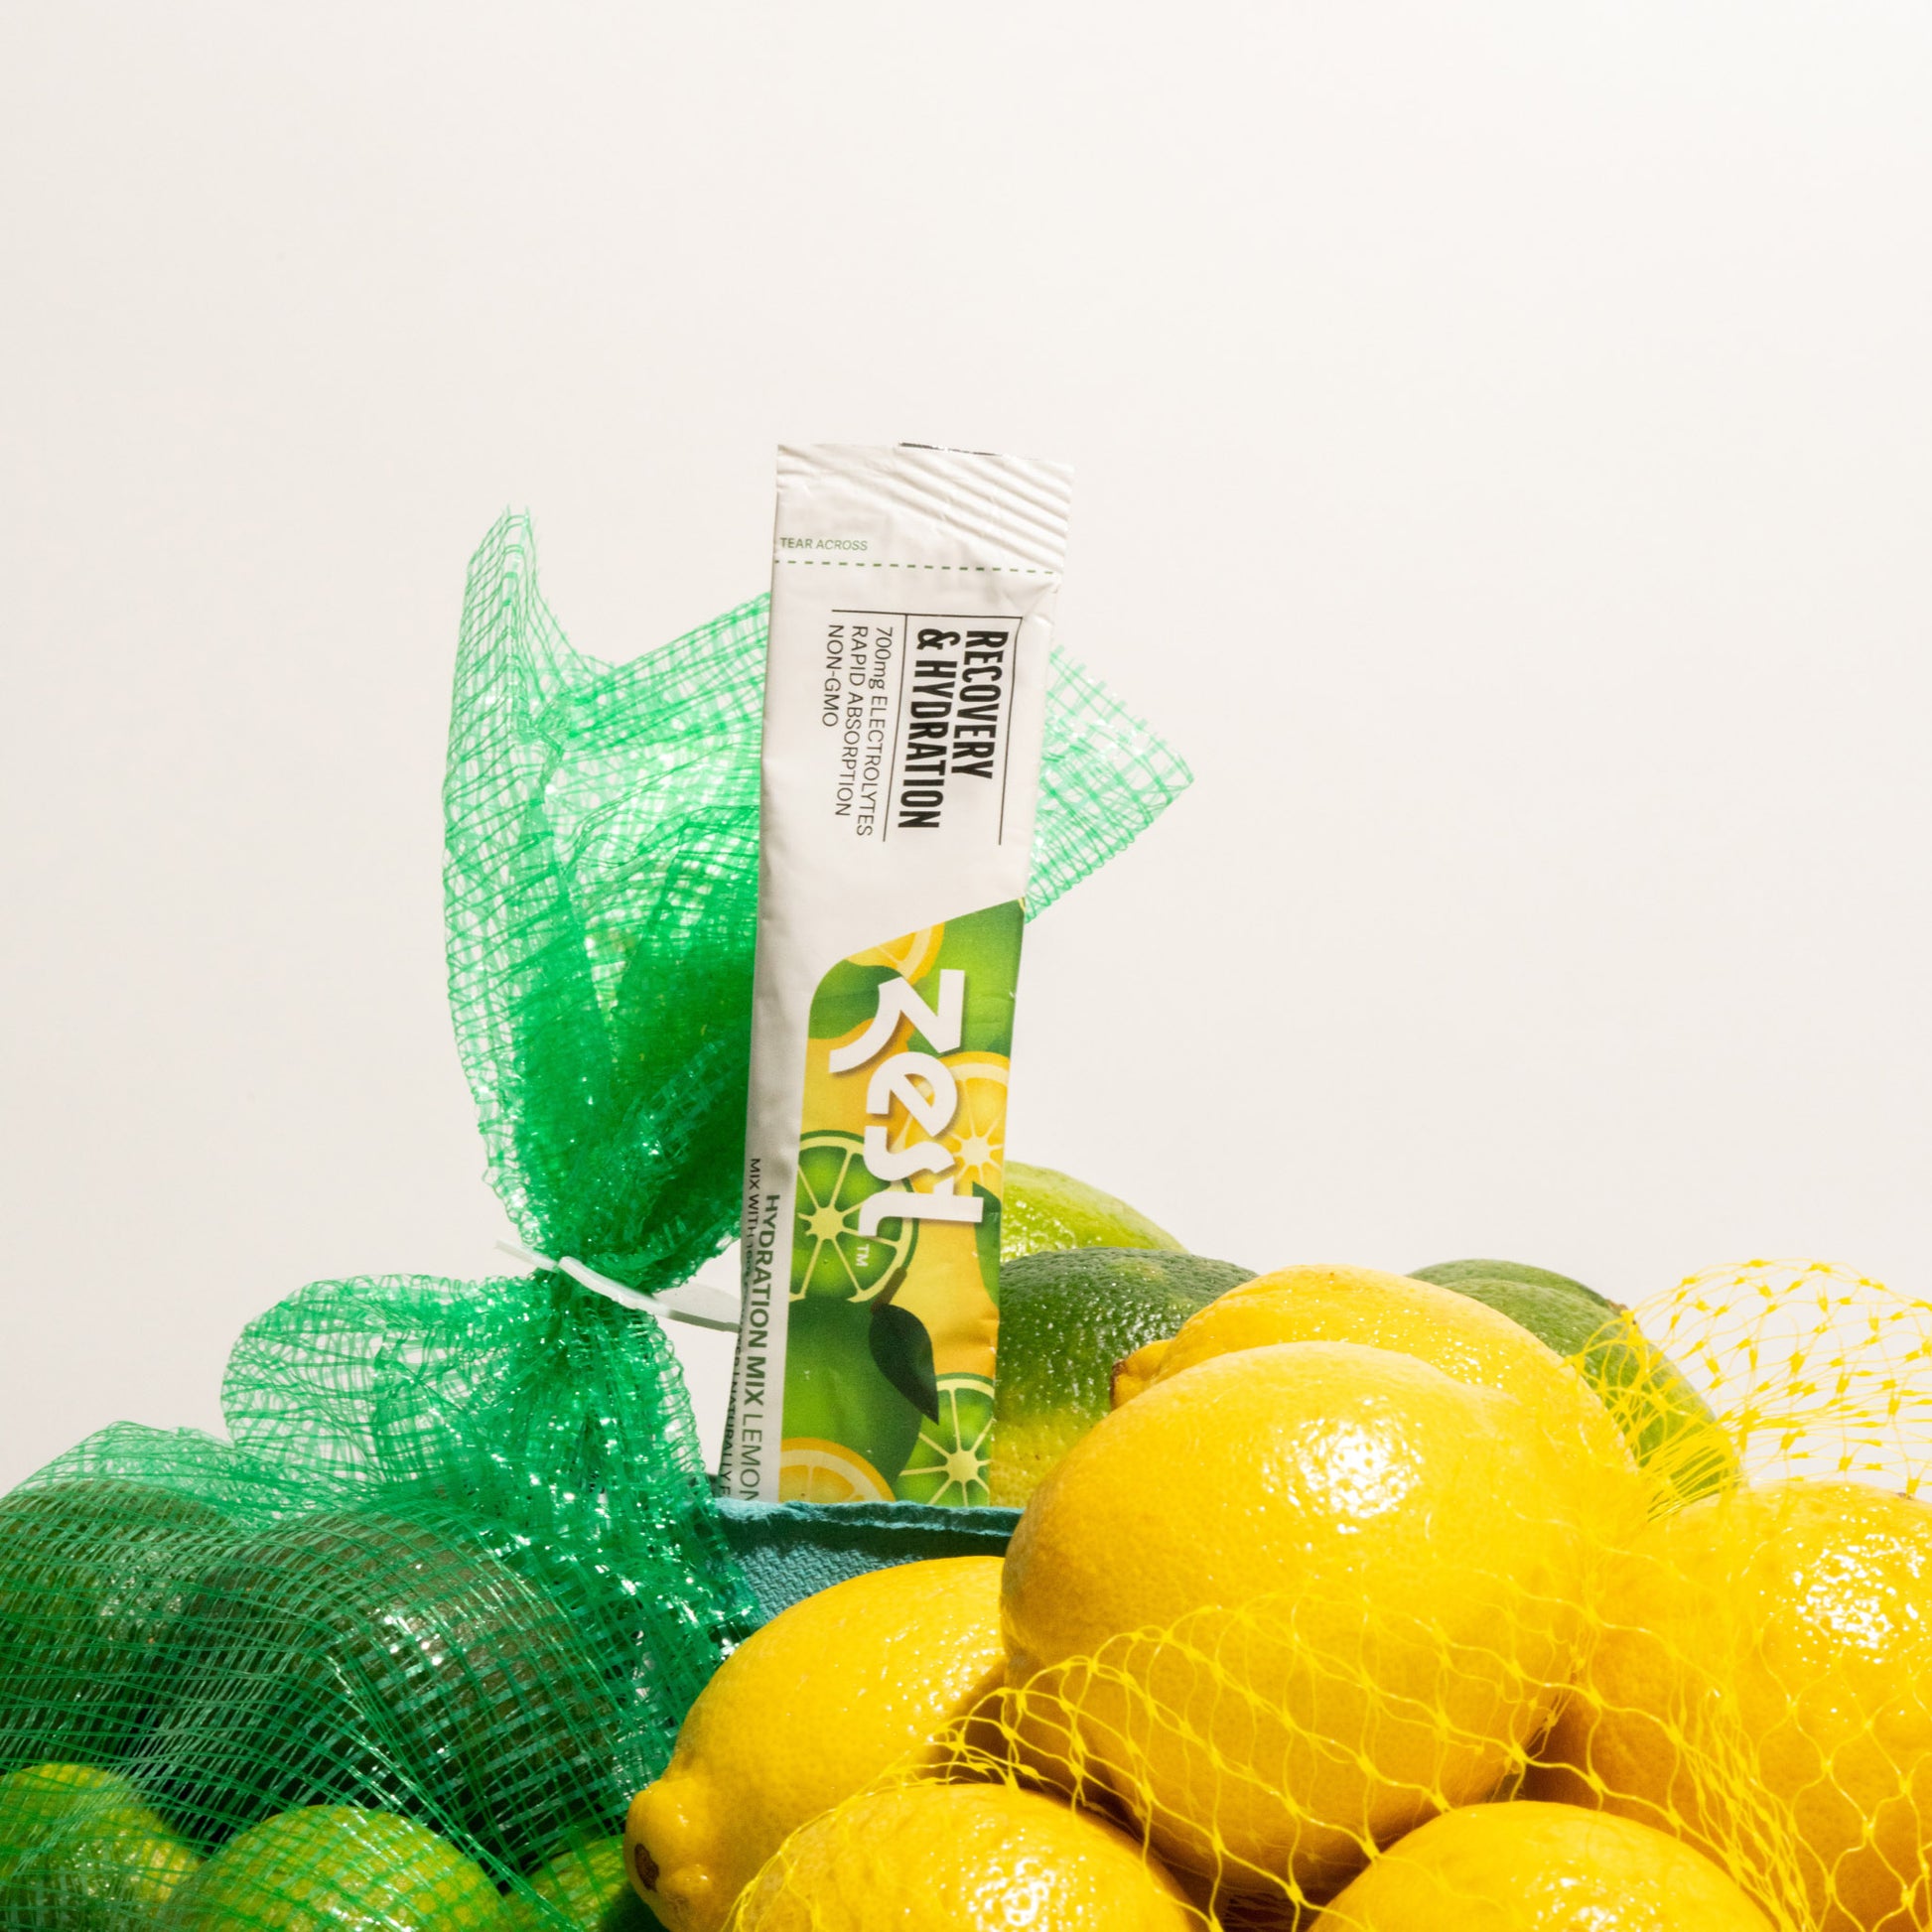 Zest Lemon Lime Recovery & Hydration - Powder Sticks